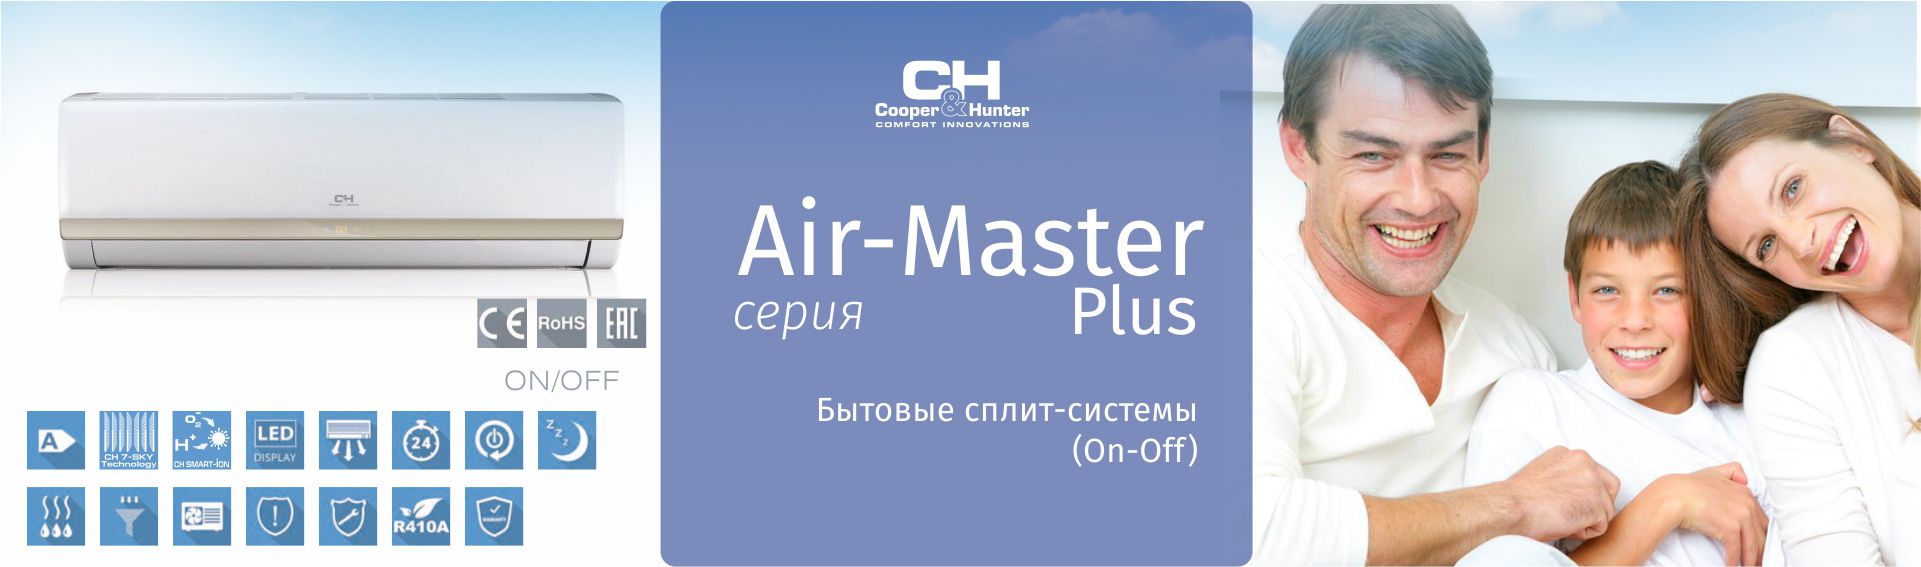 Серия Air-Master Plus